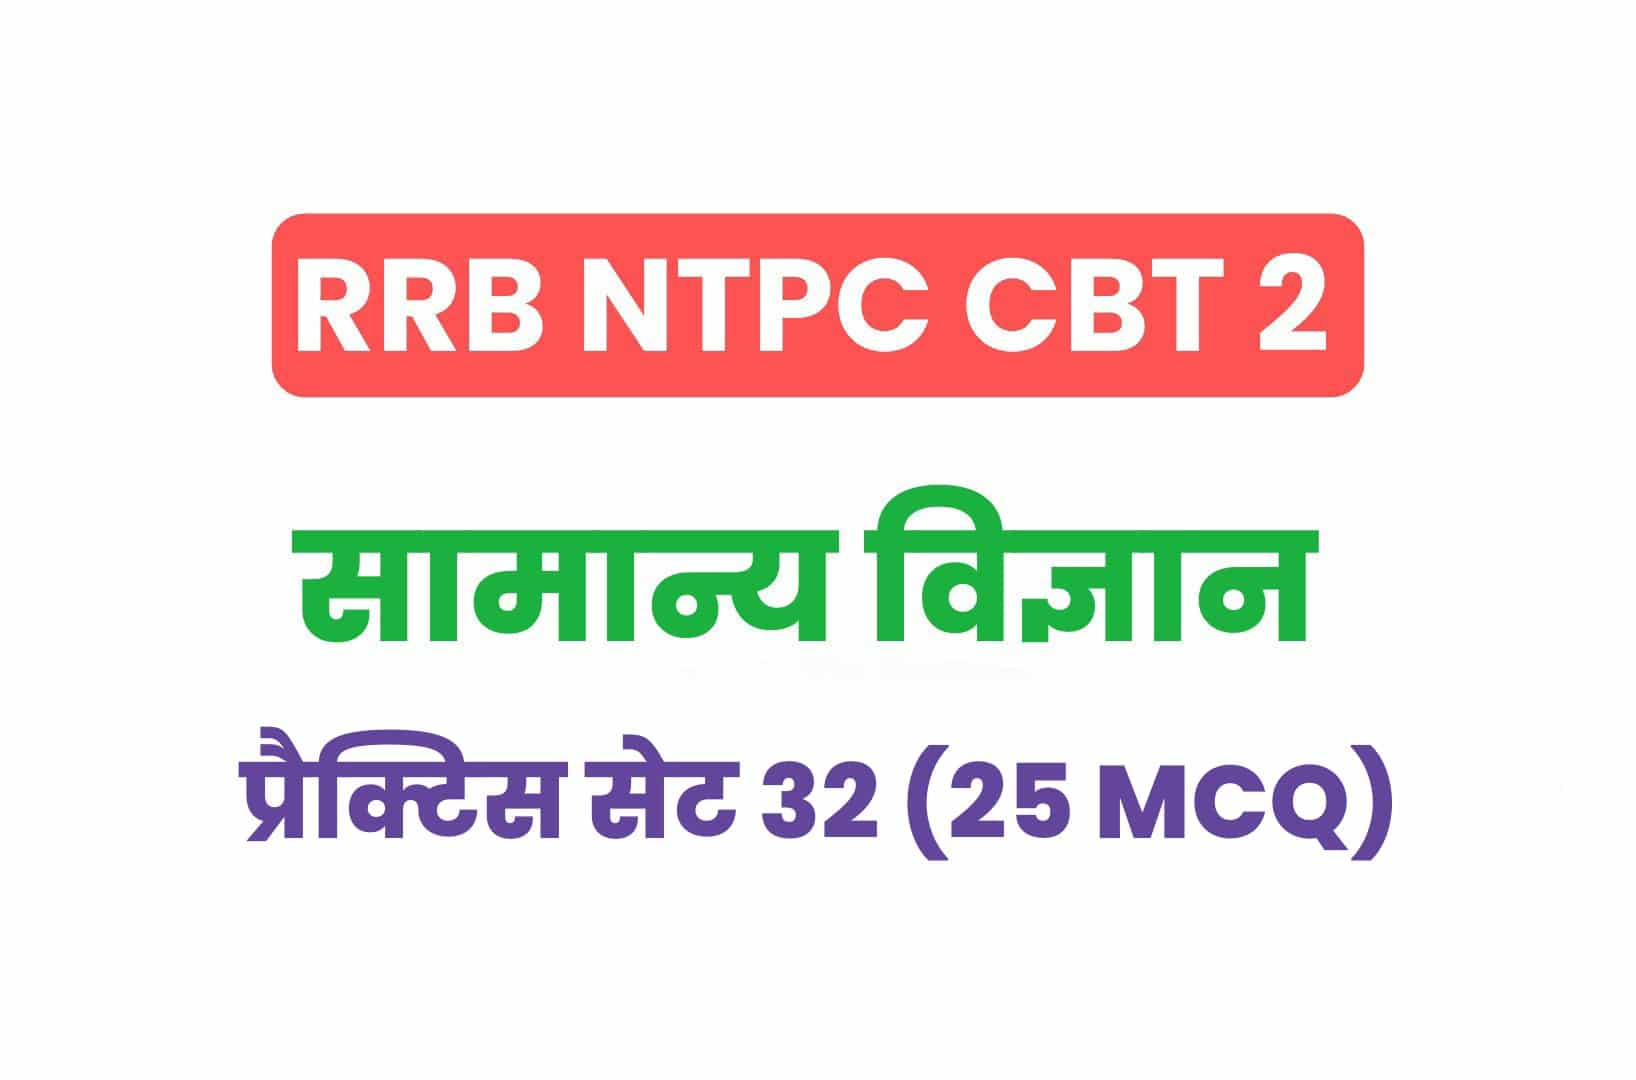 RRB NTPC CBT 2 Science प्रैक्टिस सेट 32: परीक्षा में शामिल होने से पूर्व करें सामान्य विज्ञान के मुख्य प्रश्नों का अध्ययन